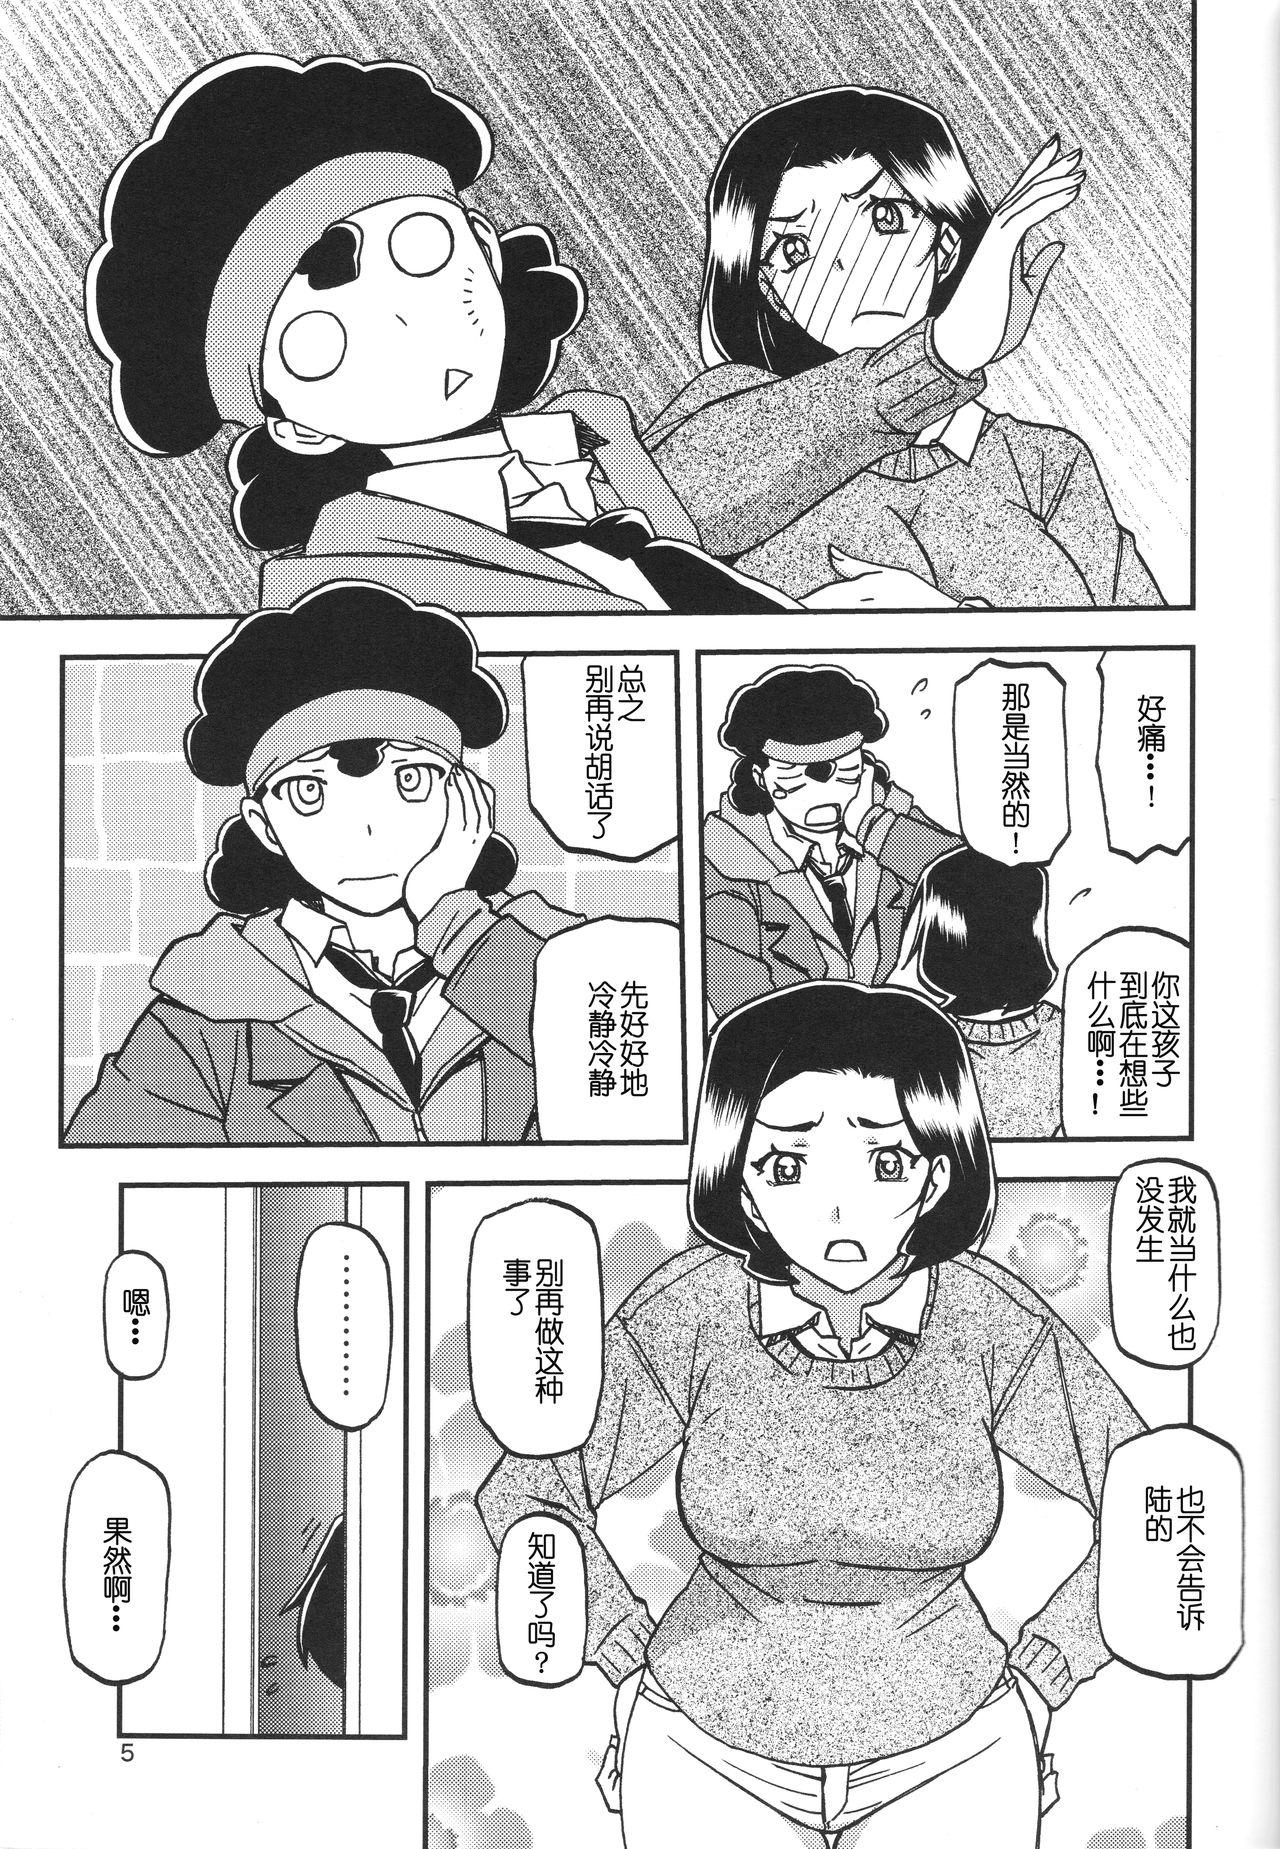 Hidden Akebi no Mi - Misora - Akebi no mi Cuminmouth - Page 4